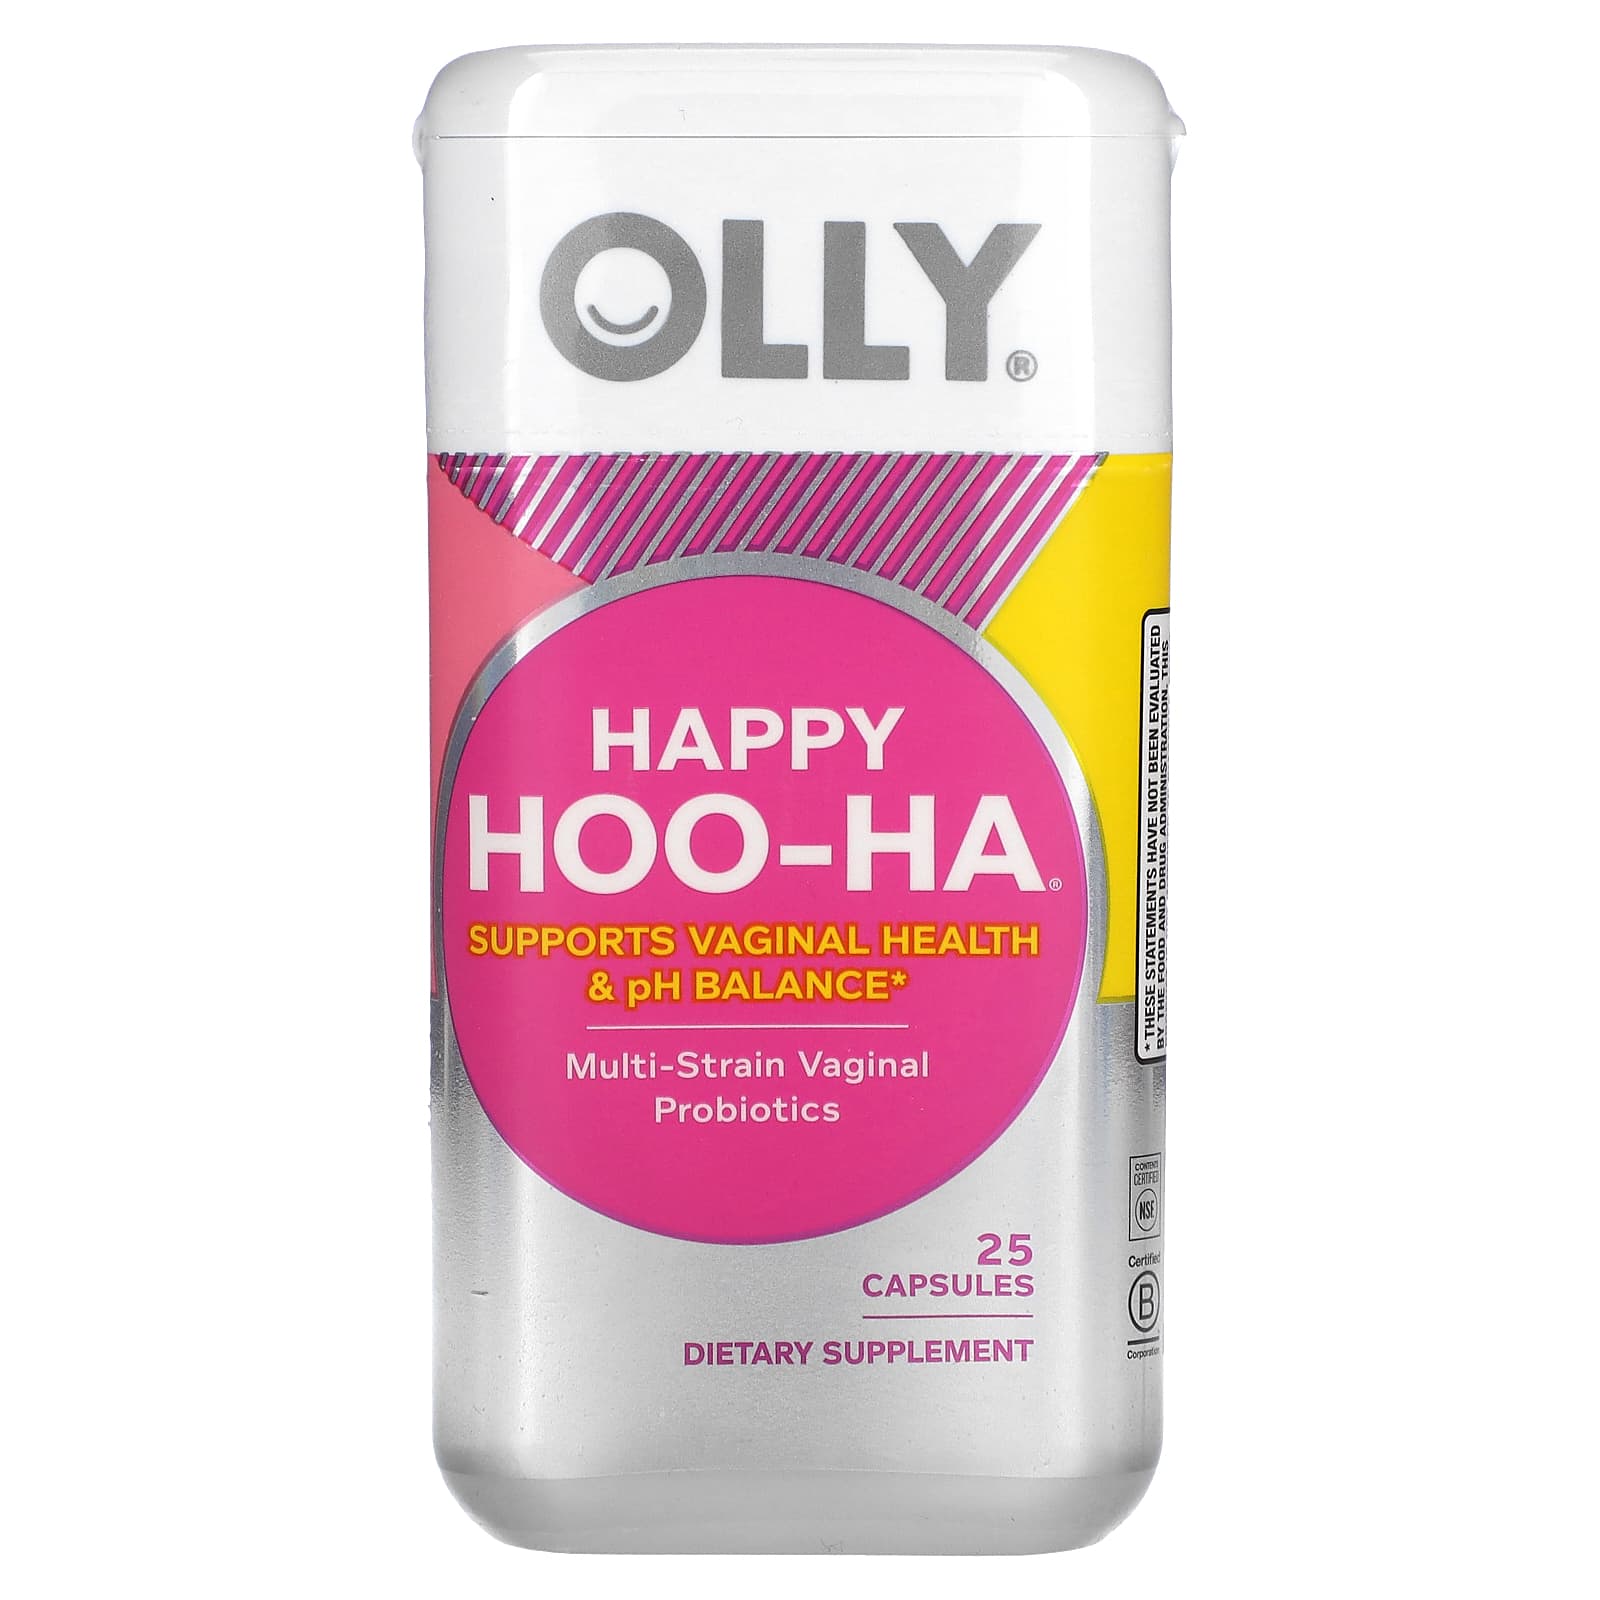 Olly Happy Hoo-Ha | What menopause symptoms